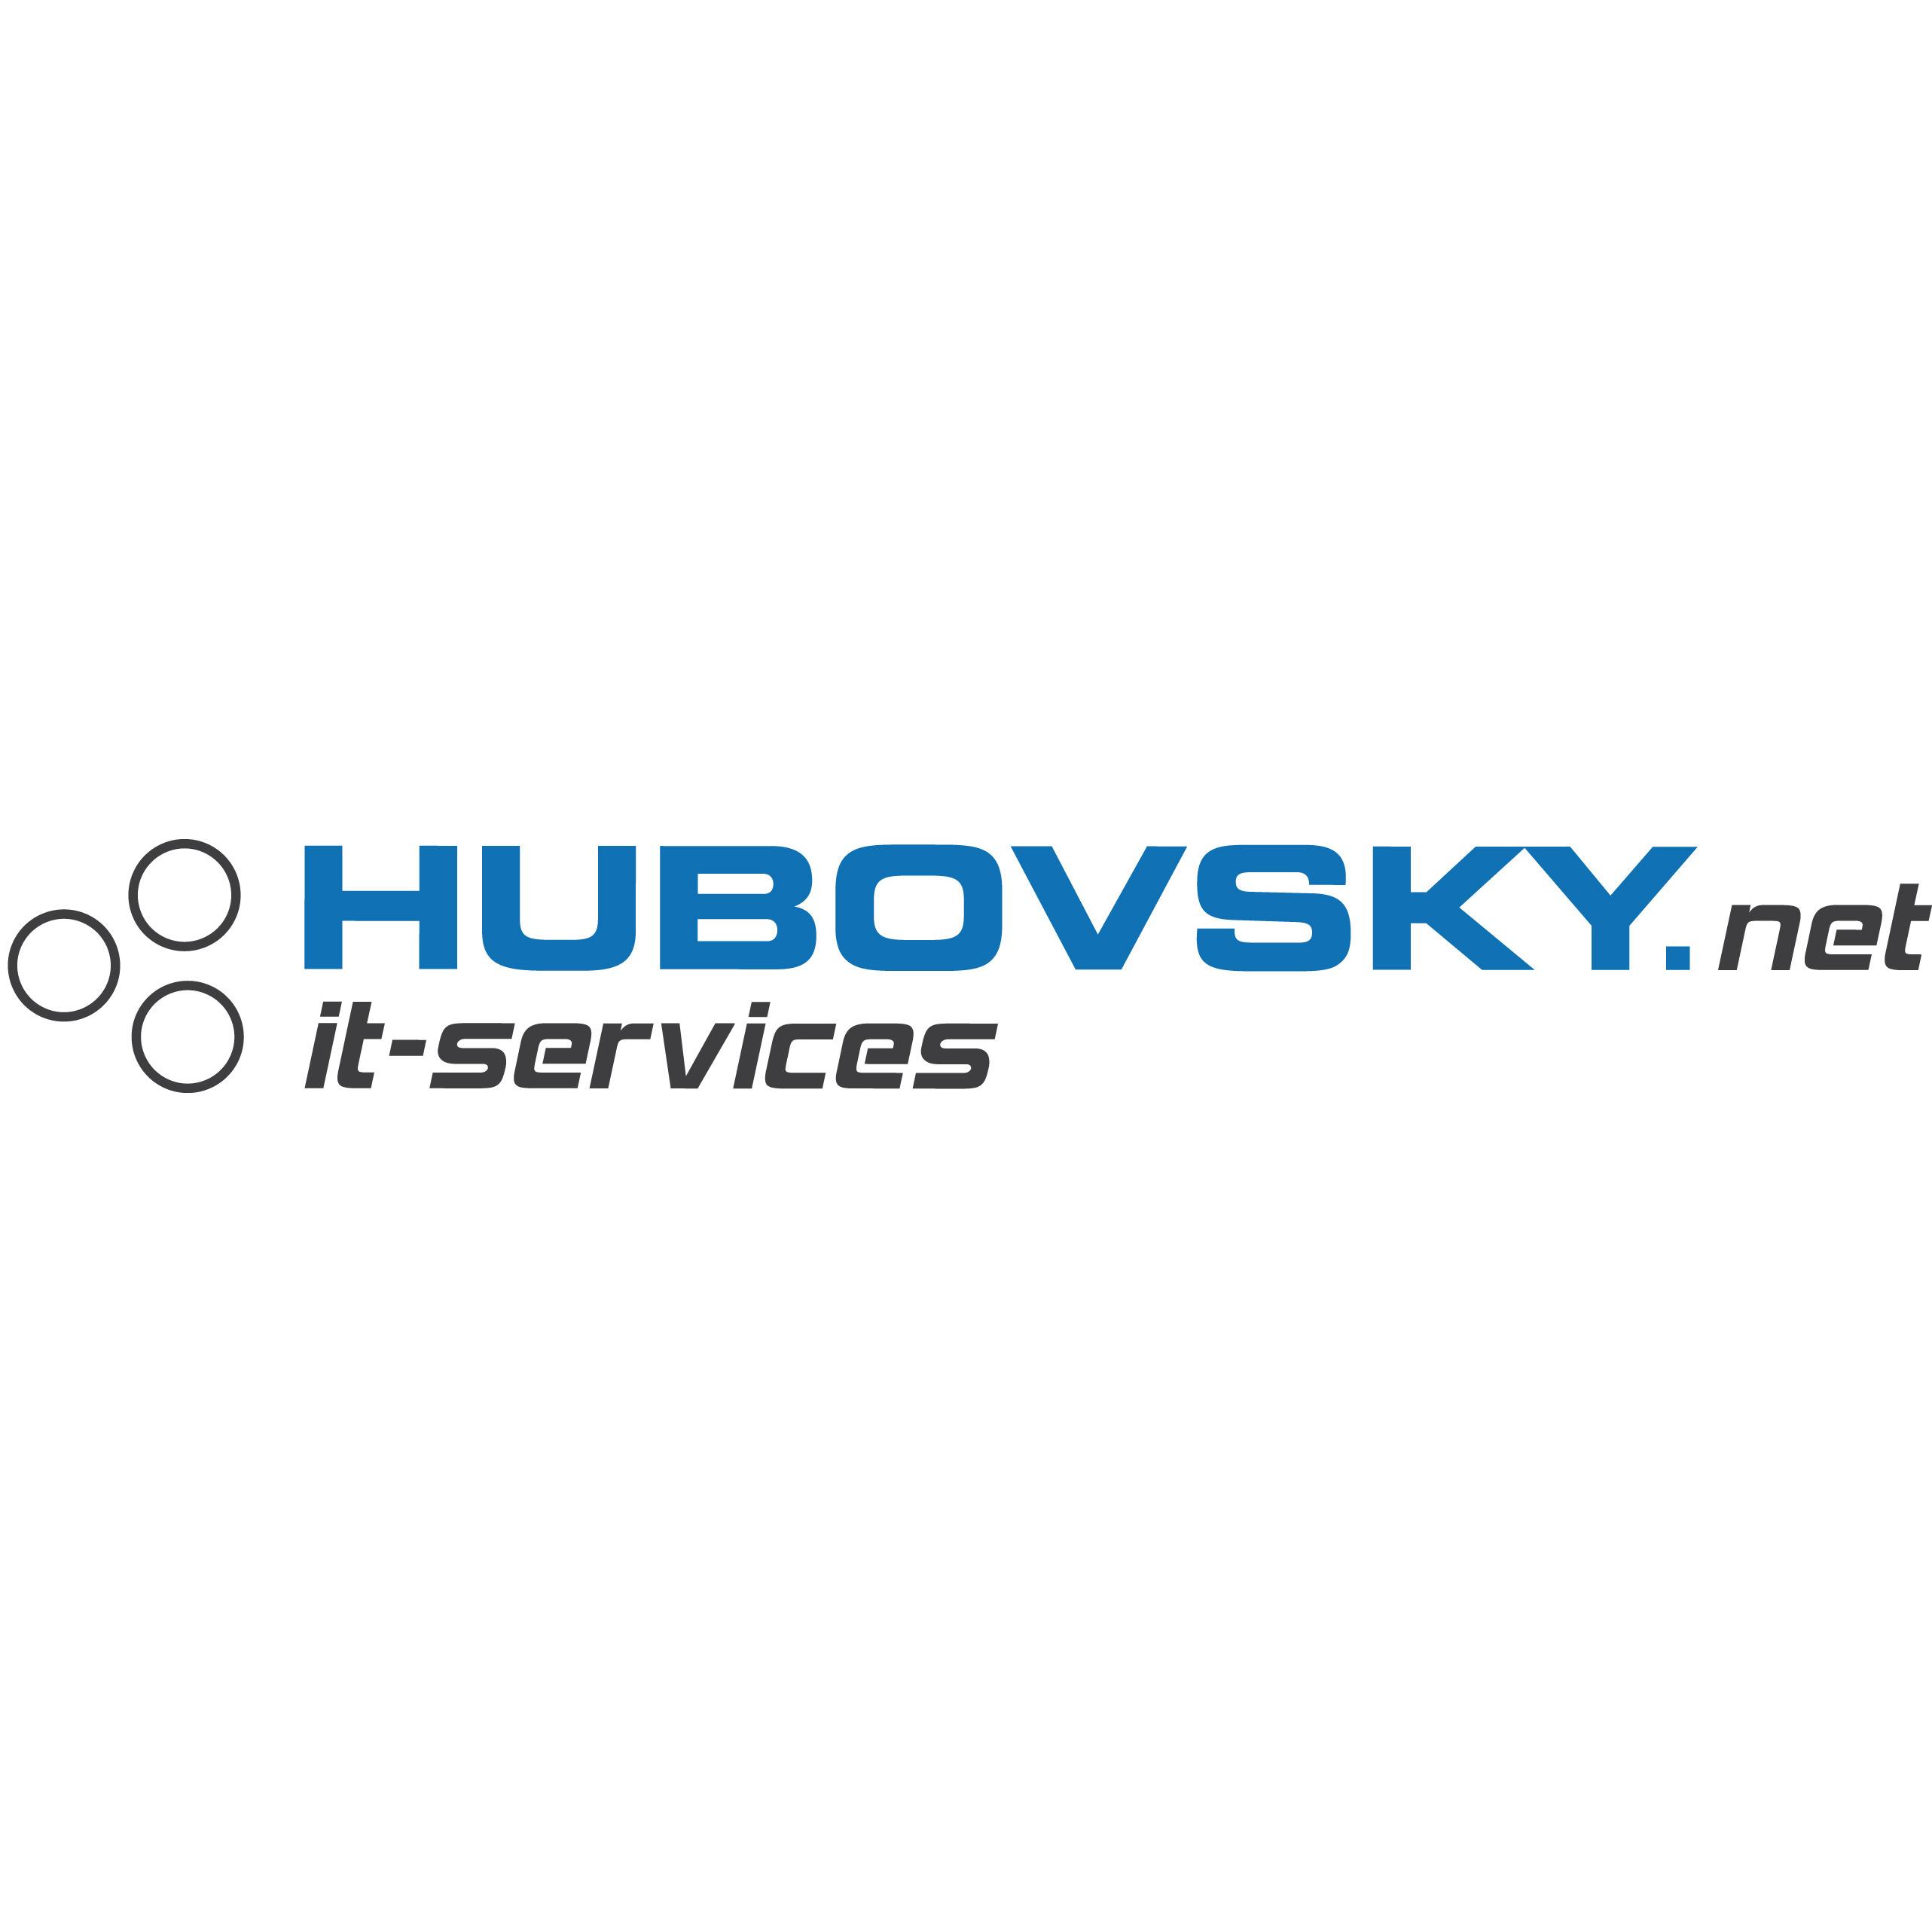 Hubovsky.net IT Services GmbH Logo